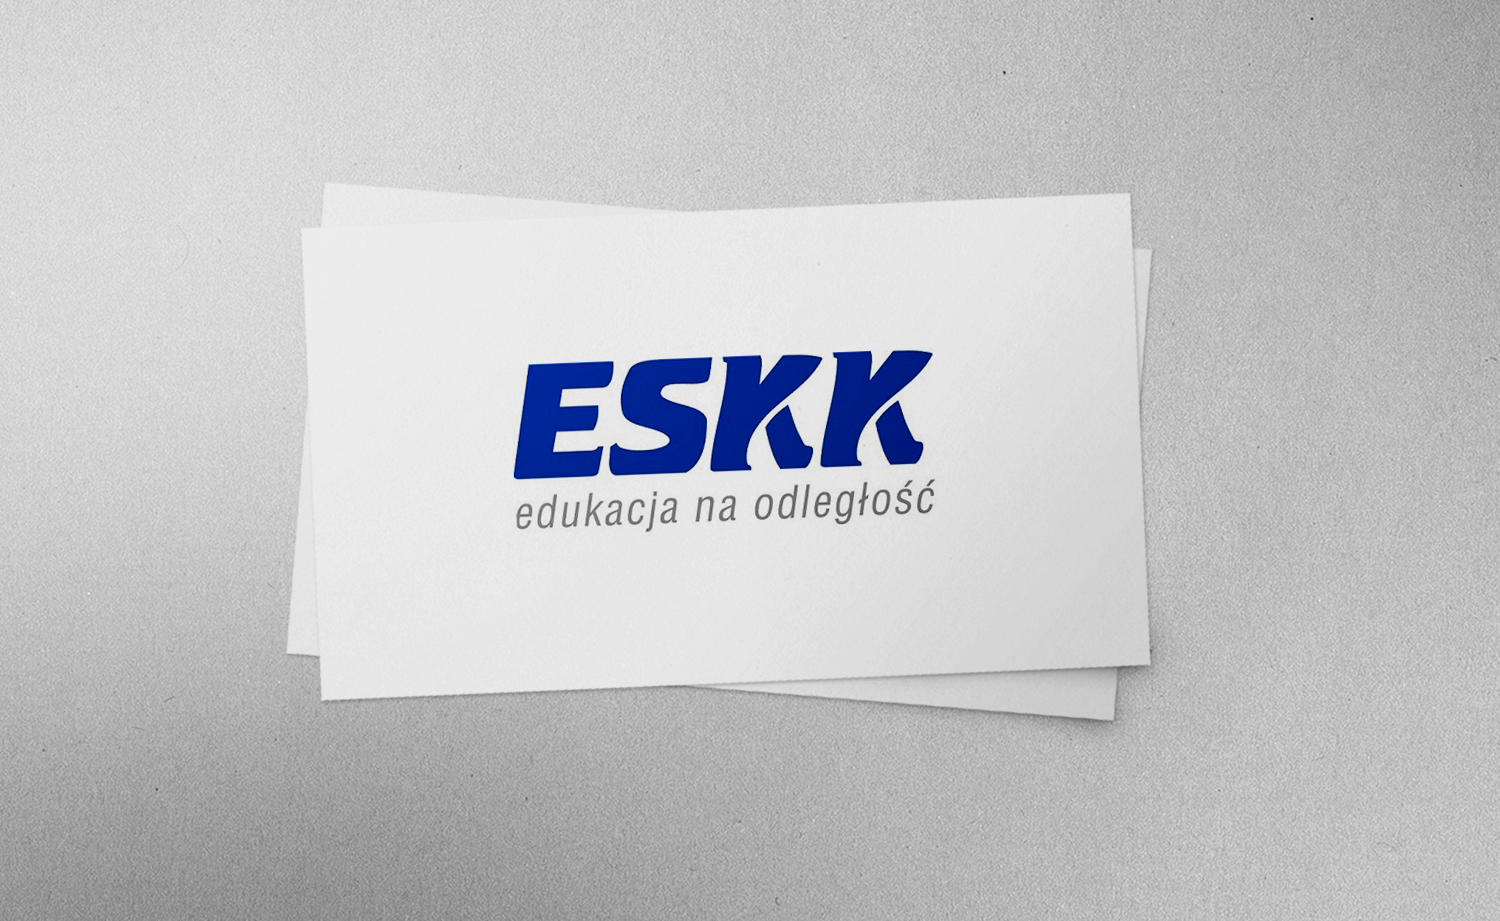 New banners for ESKK